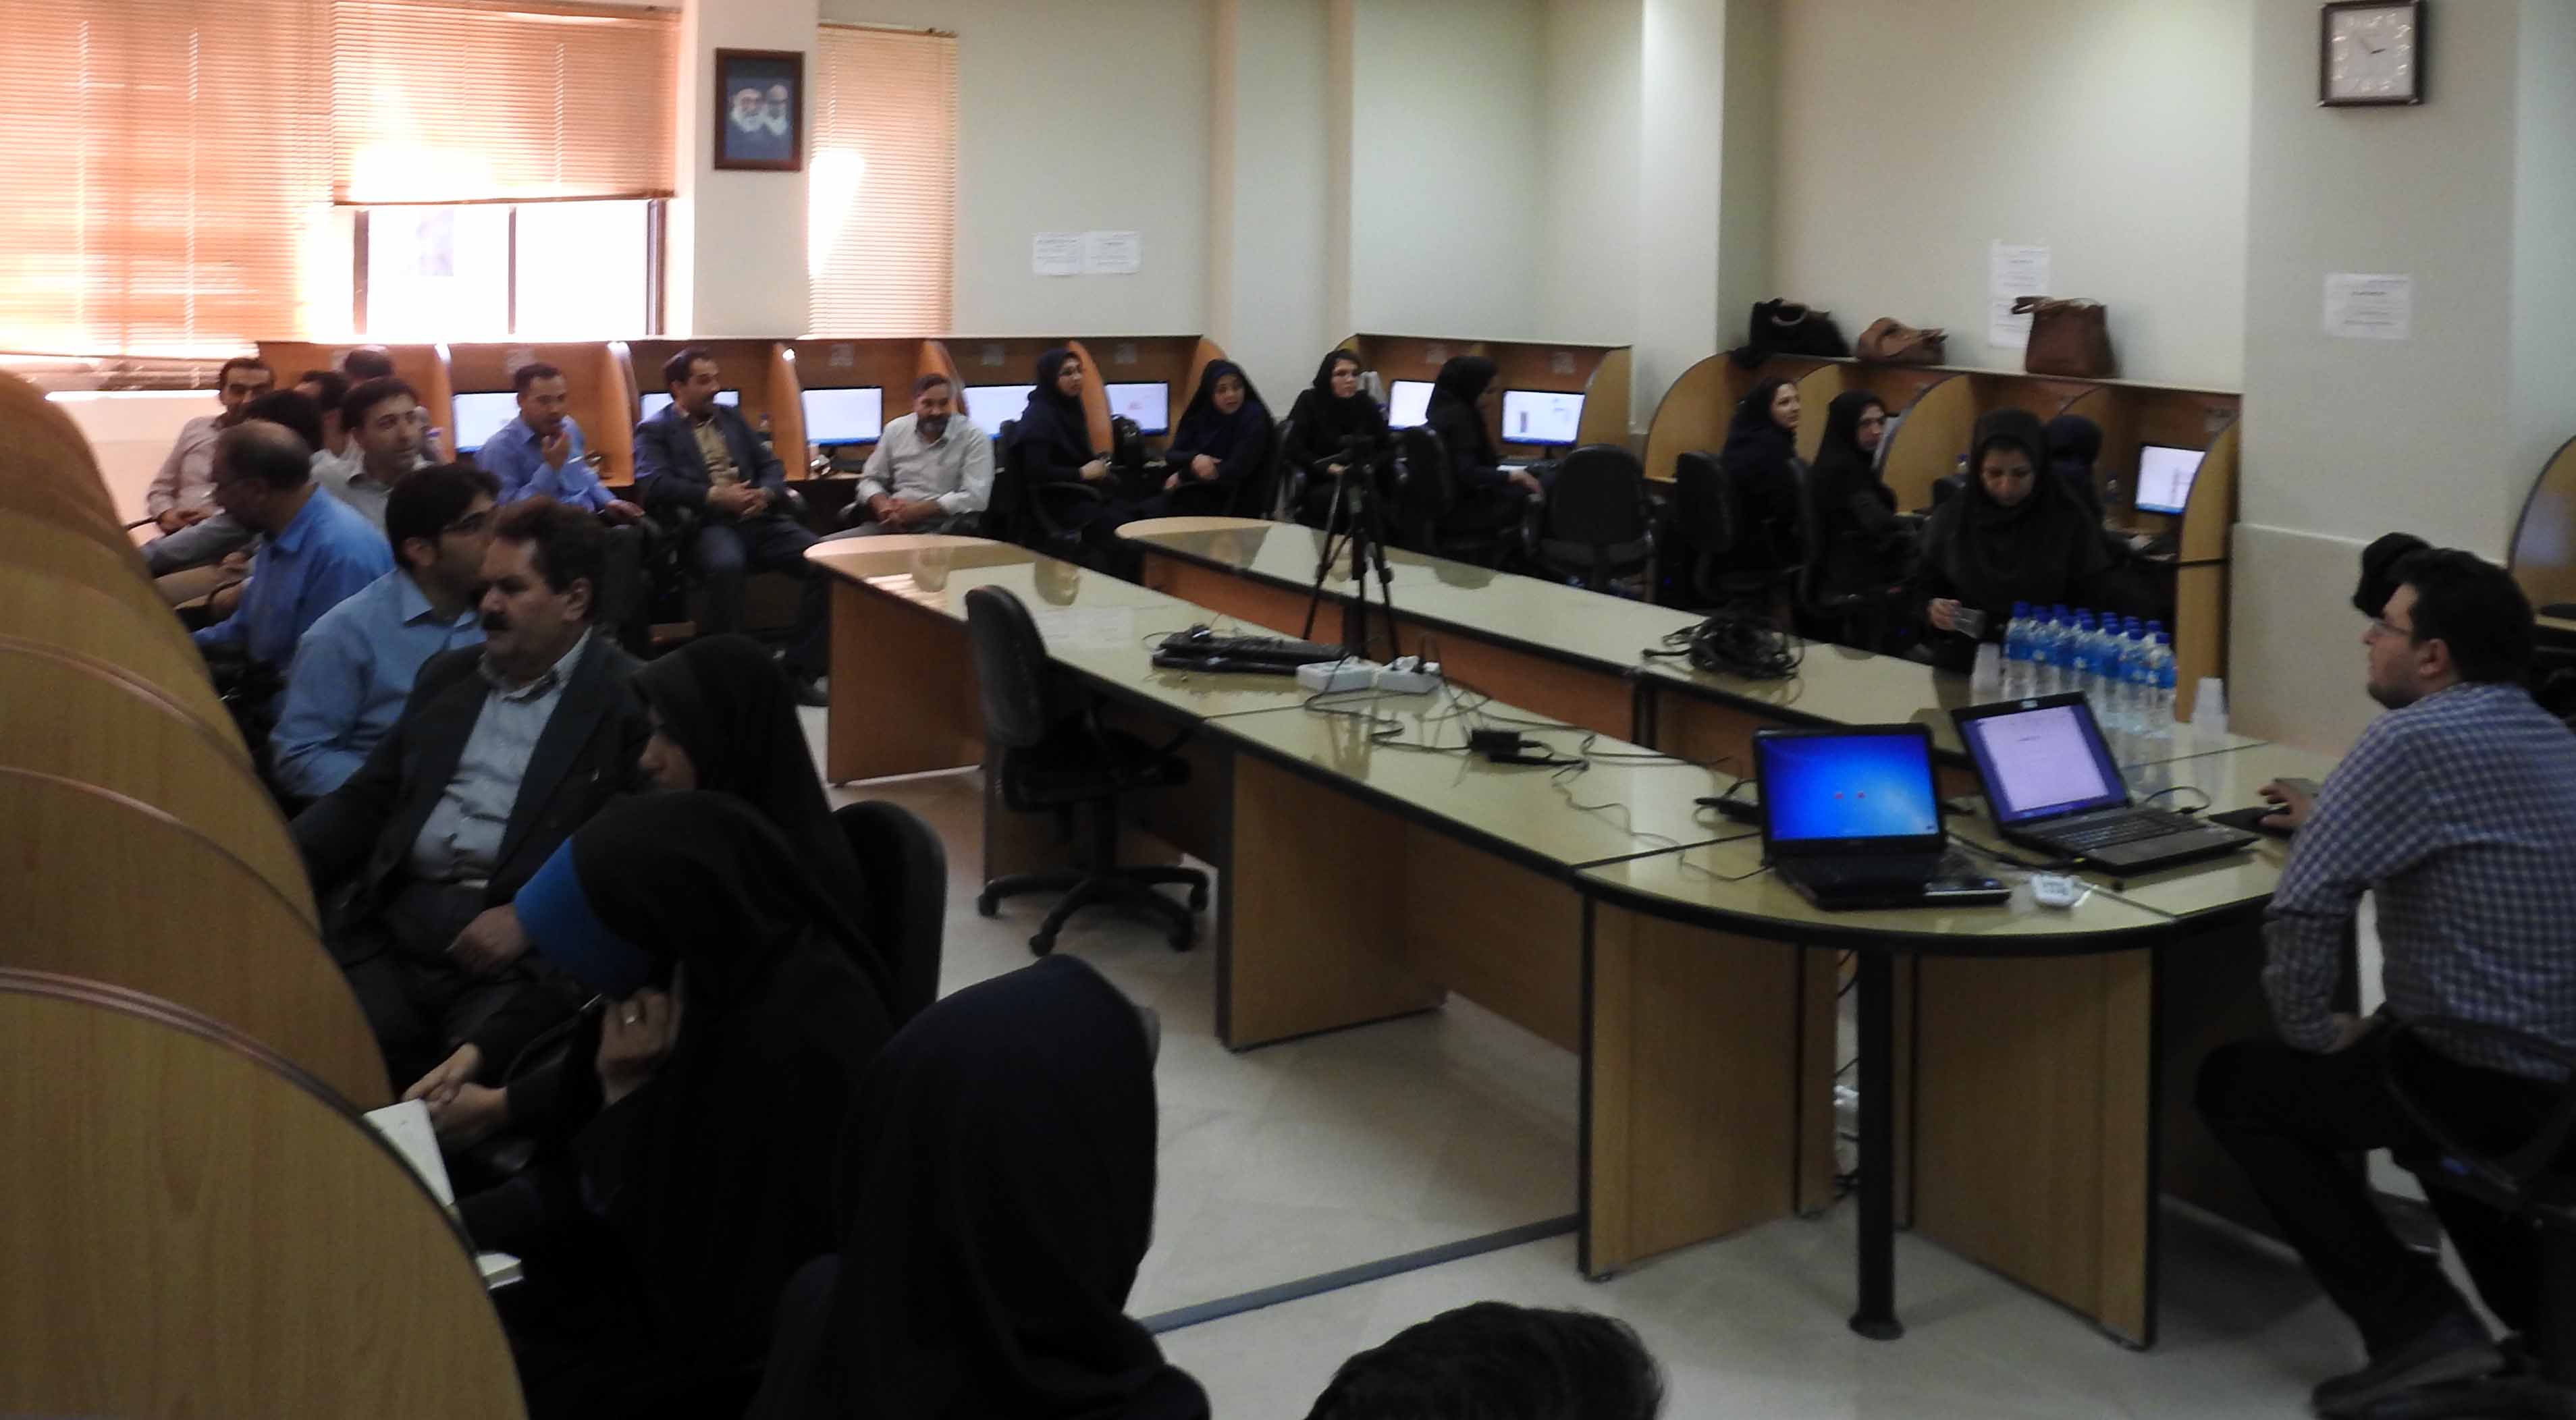 دومین دوره آموزش های کاربردی در حوزه فناوری اطلاعات ویژه همکاران ستاد دانشگاه برگزار شد